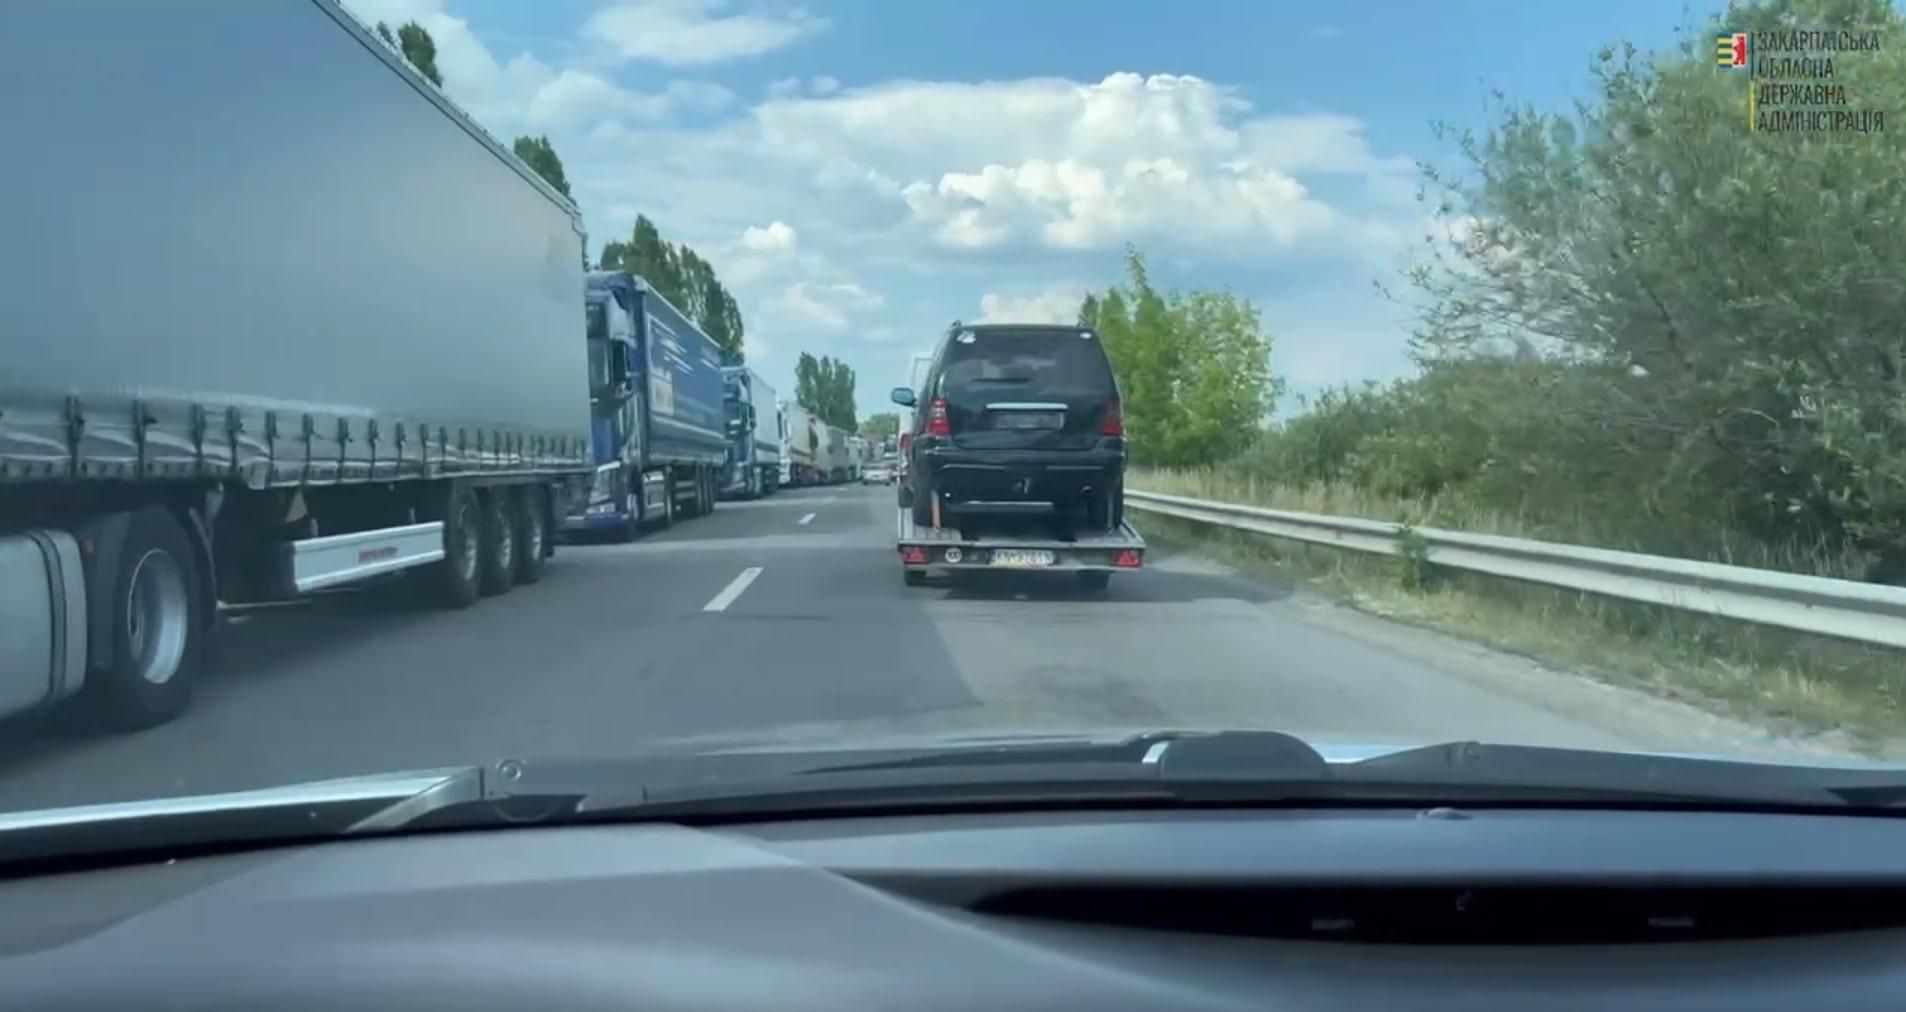 Черги на кілька кілометрів: на кордоні з Угорщиною стоять сотні автомобілів